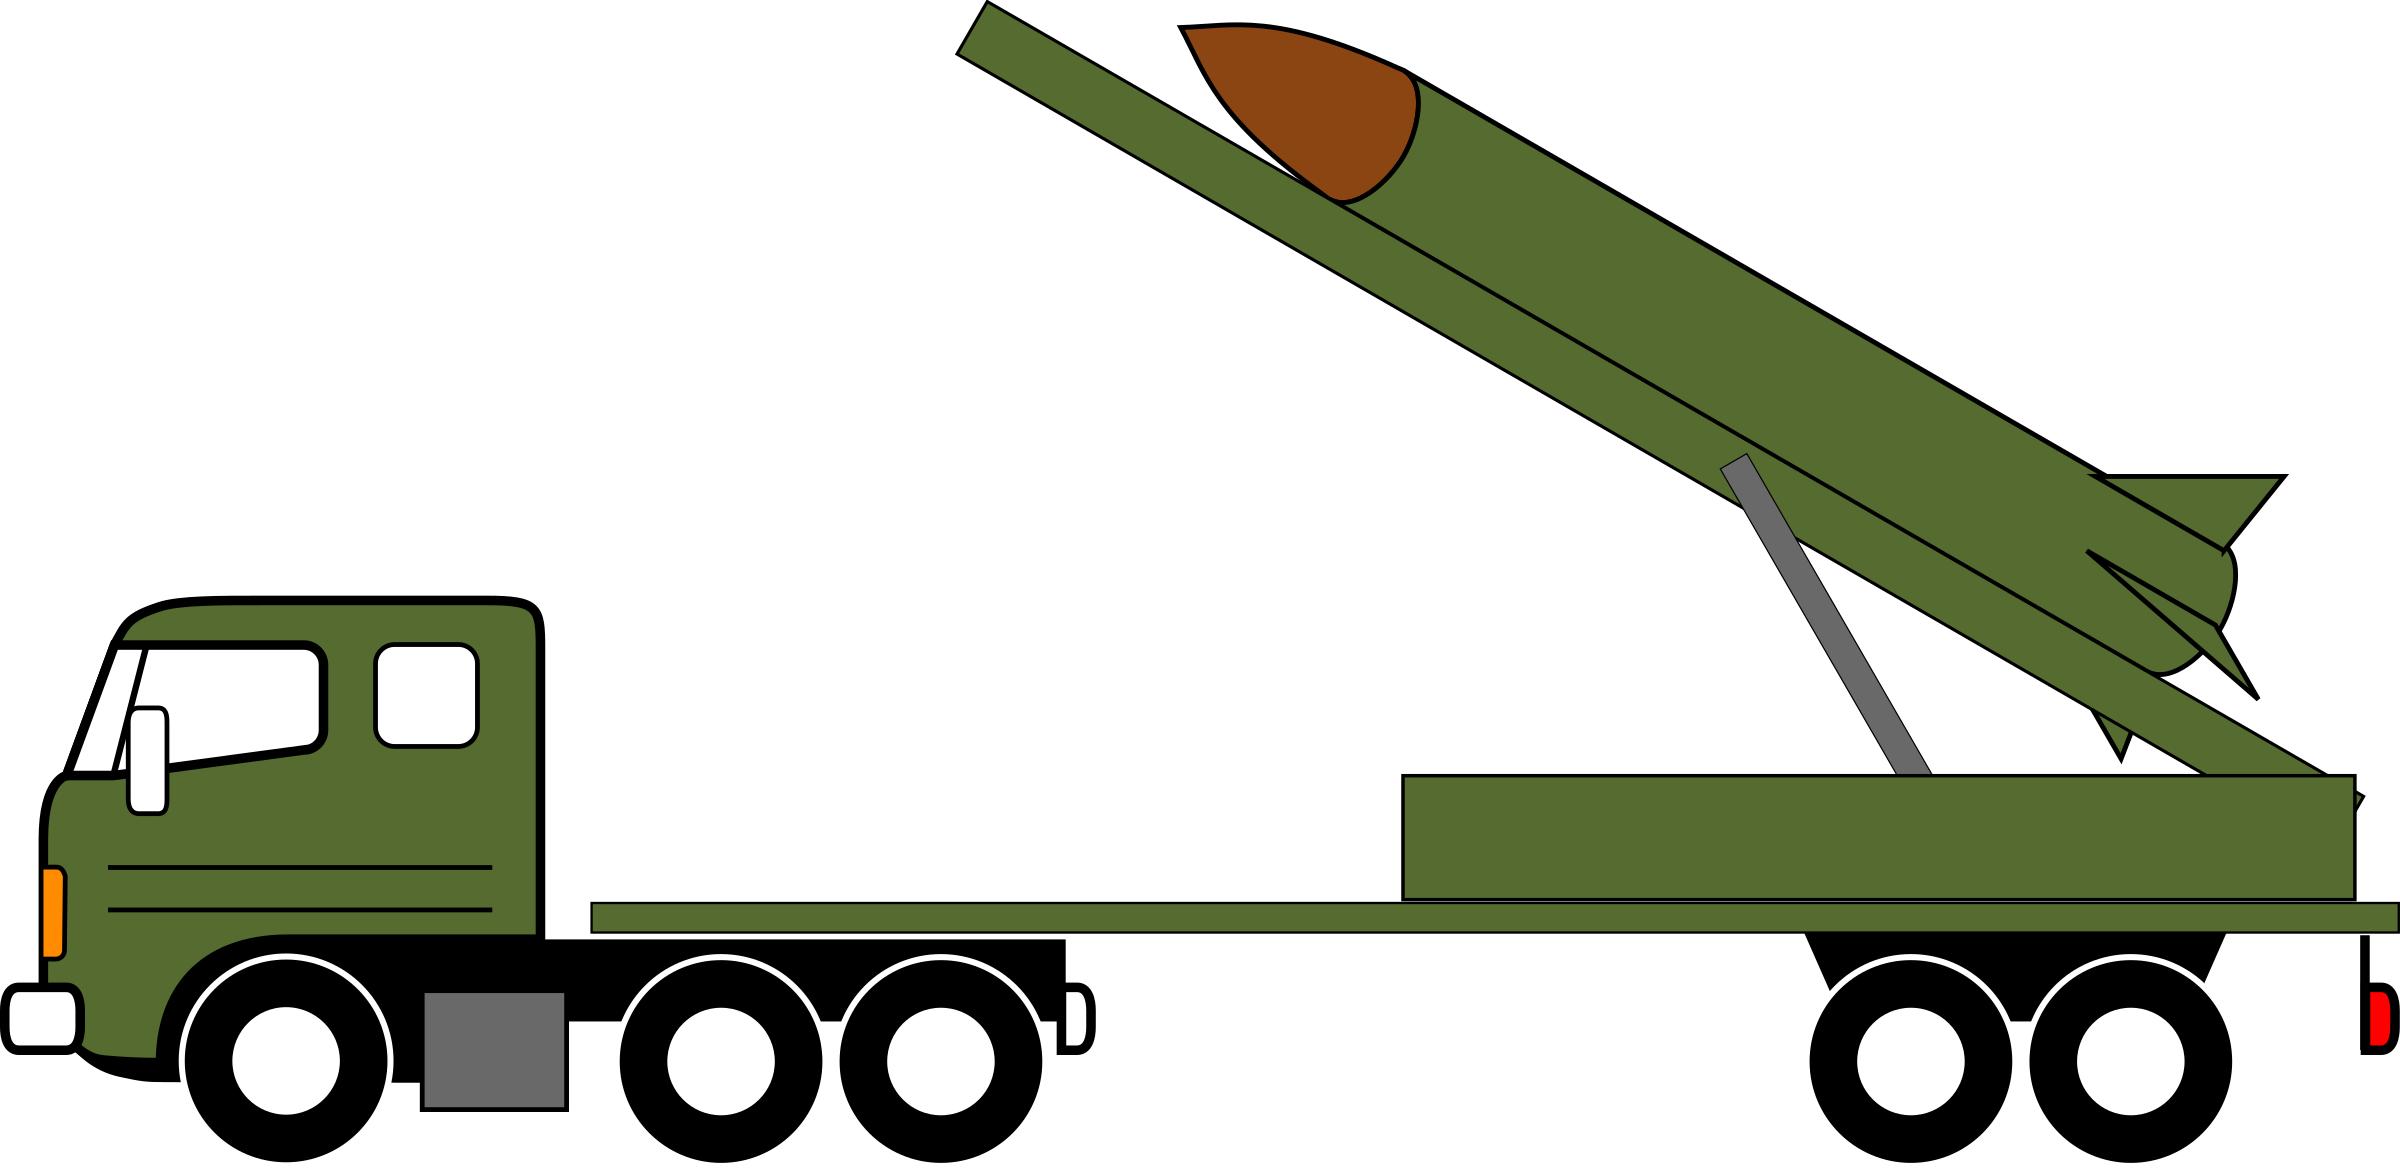 Missile Truck v6 png